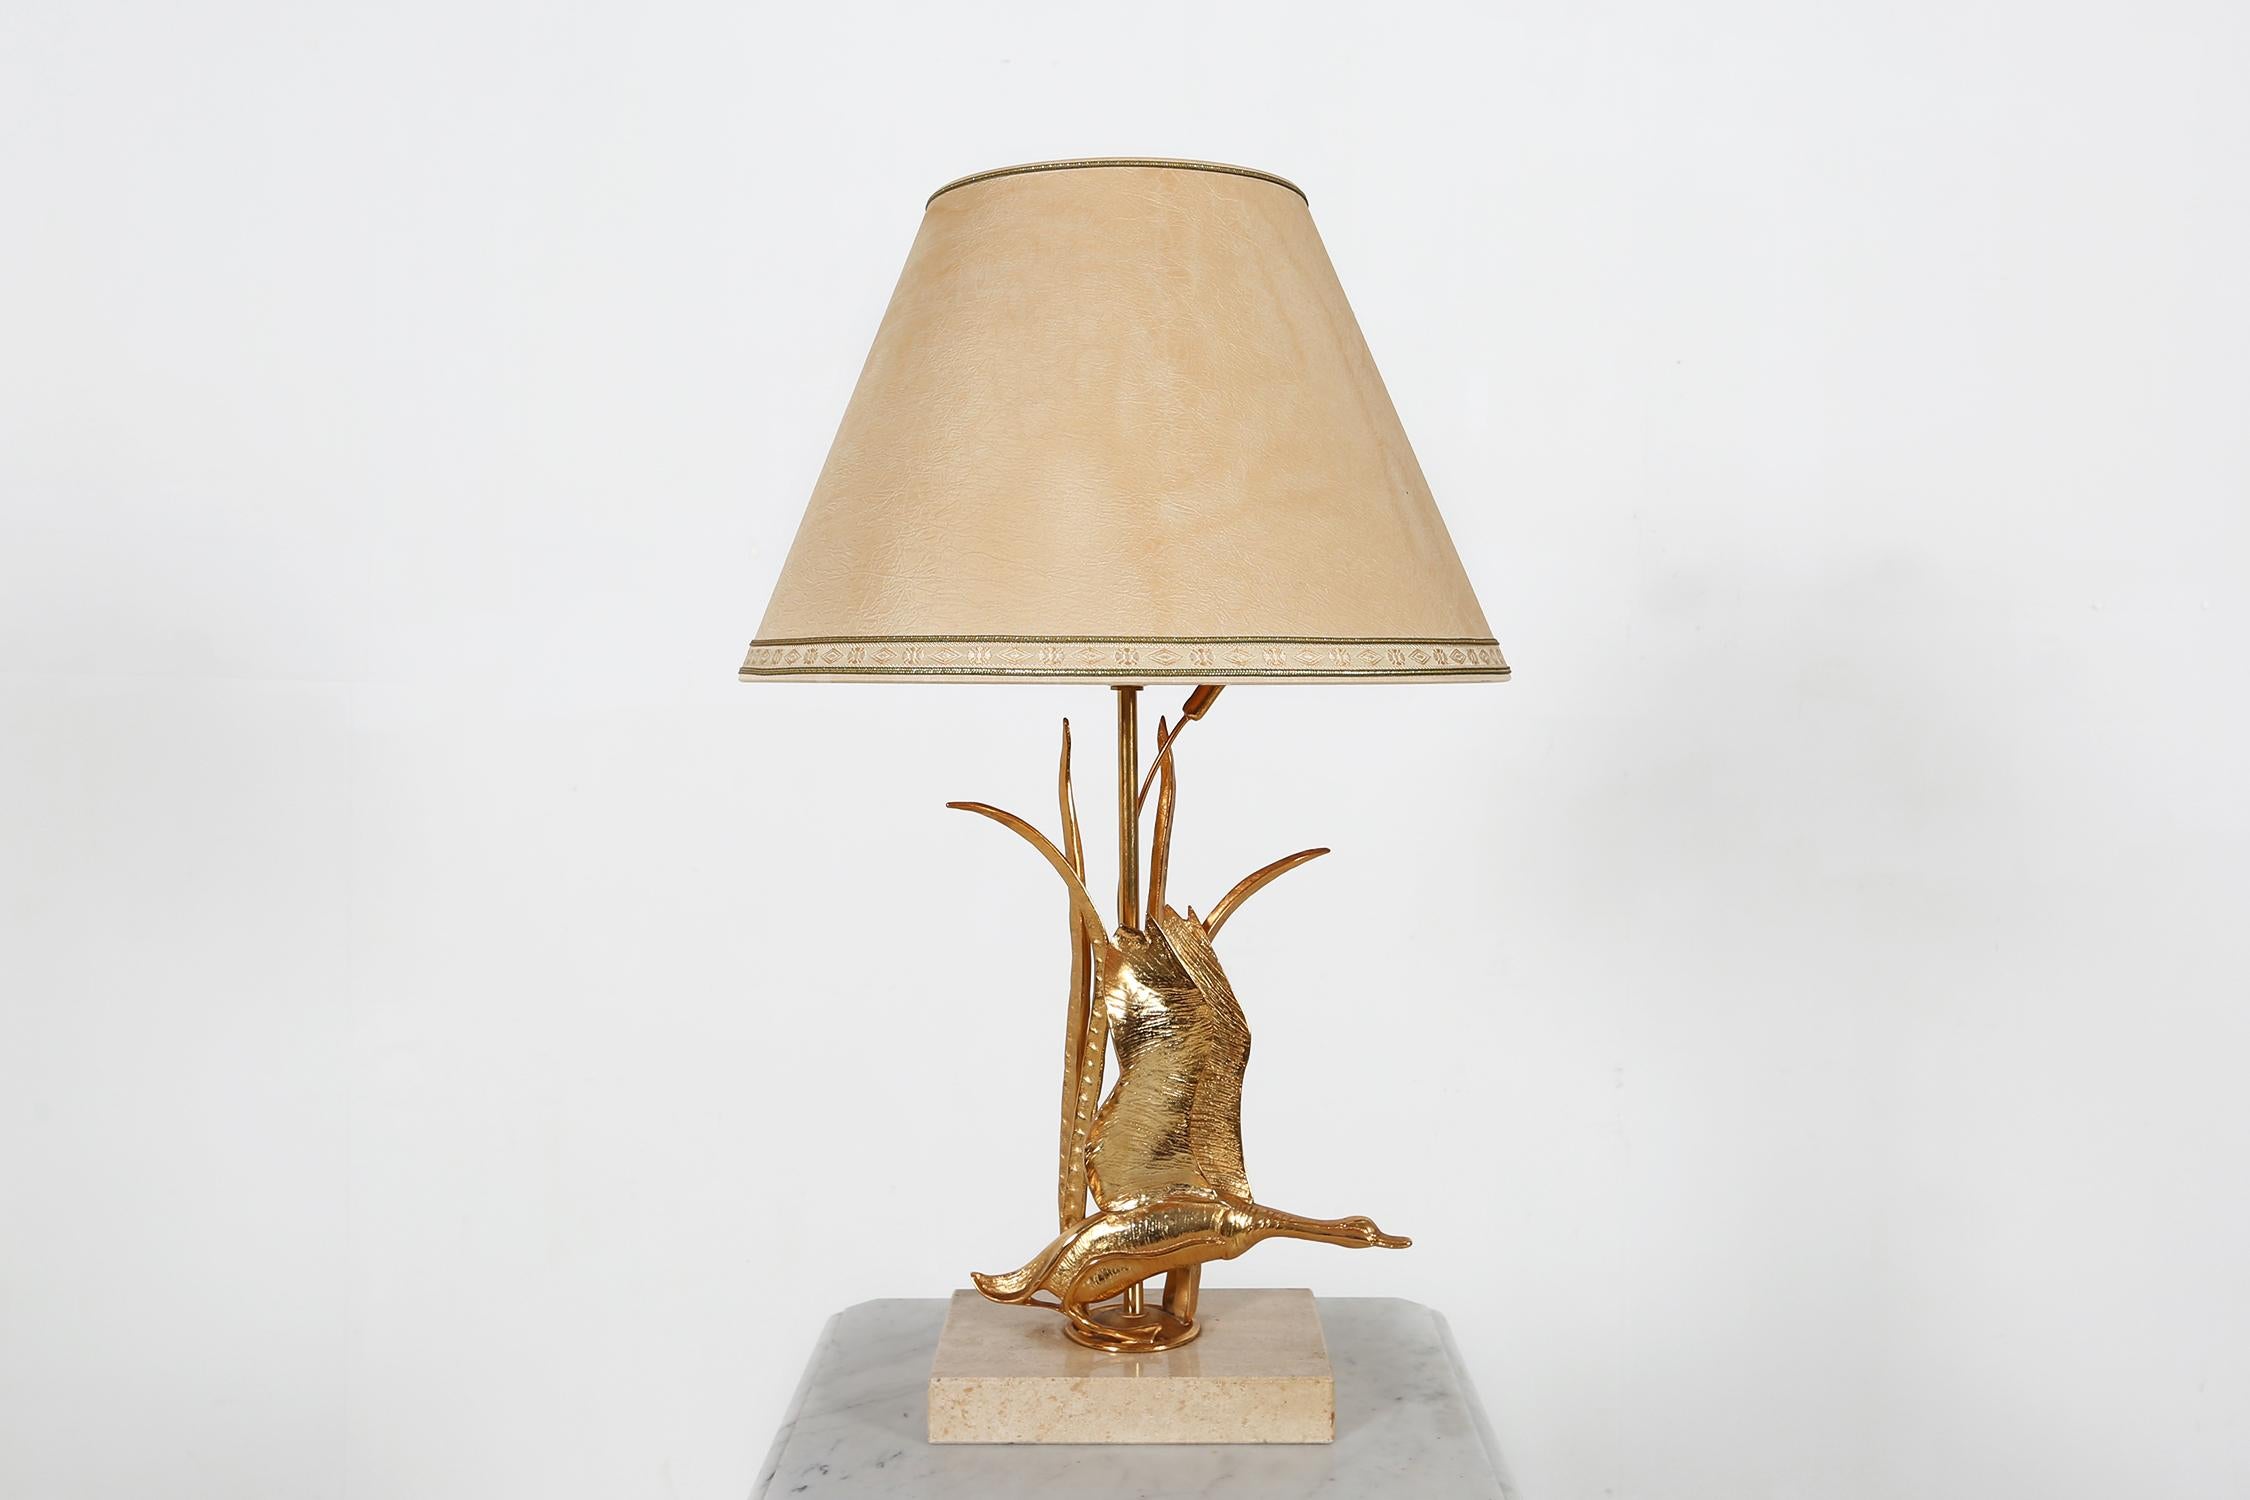 Lampe de table vintage du designer italien Lanciotto Galeotti.
Composé d'une base en travertin et d'un cygne en laiton. Beaux détails et finition de haute qualité.